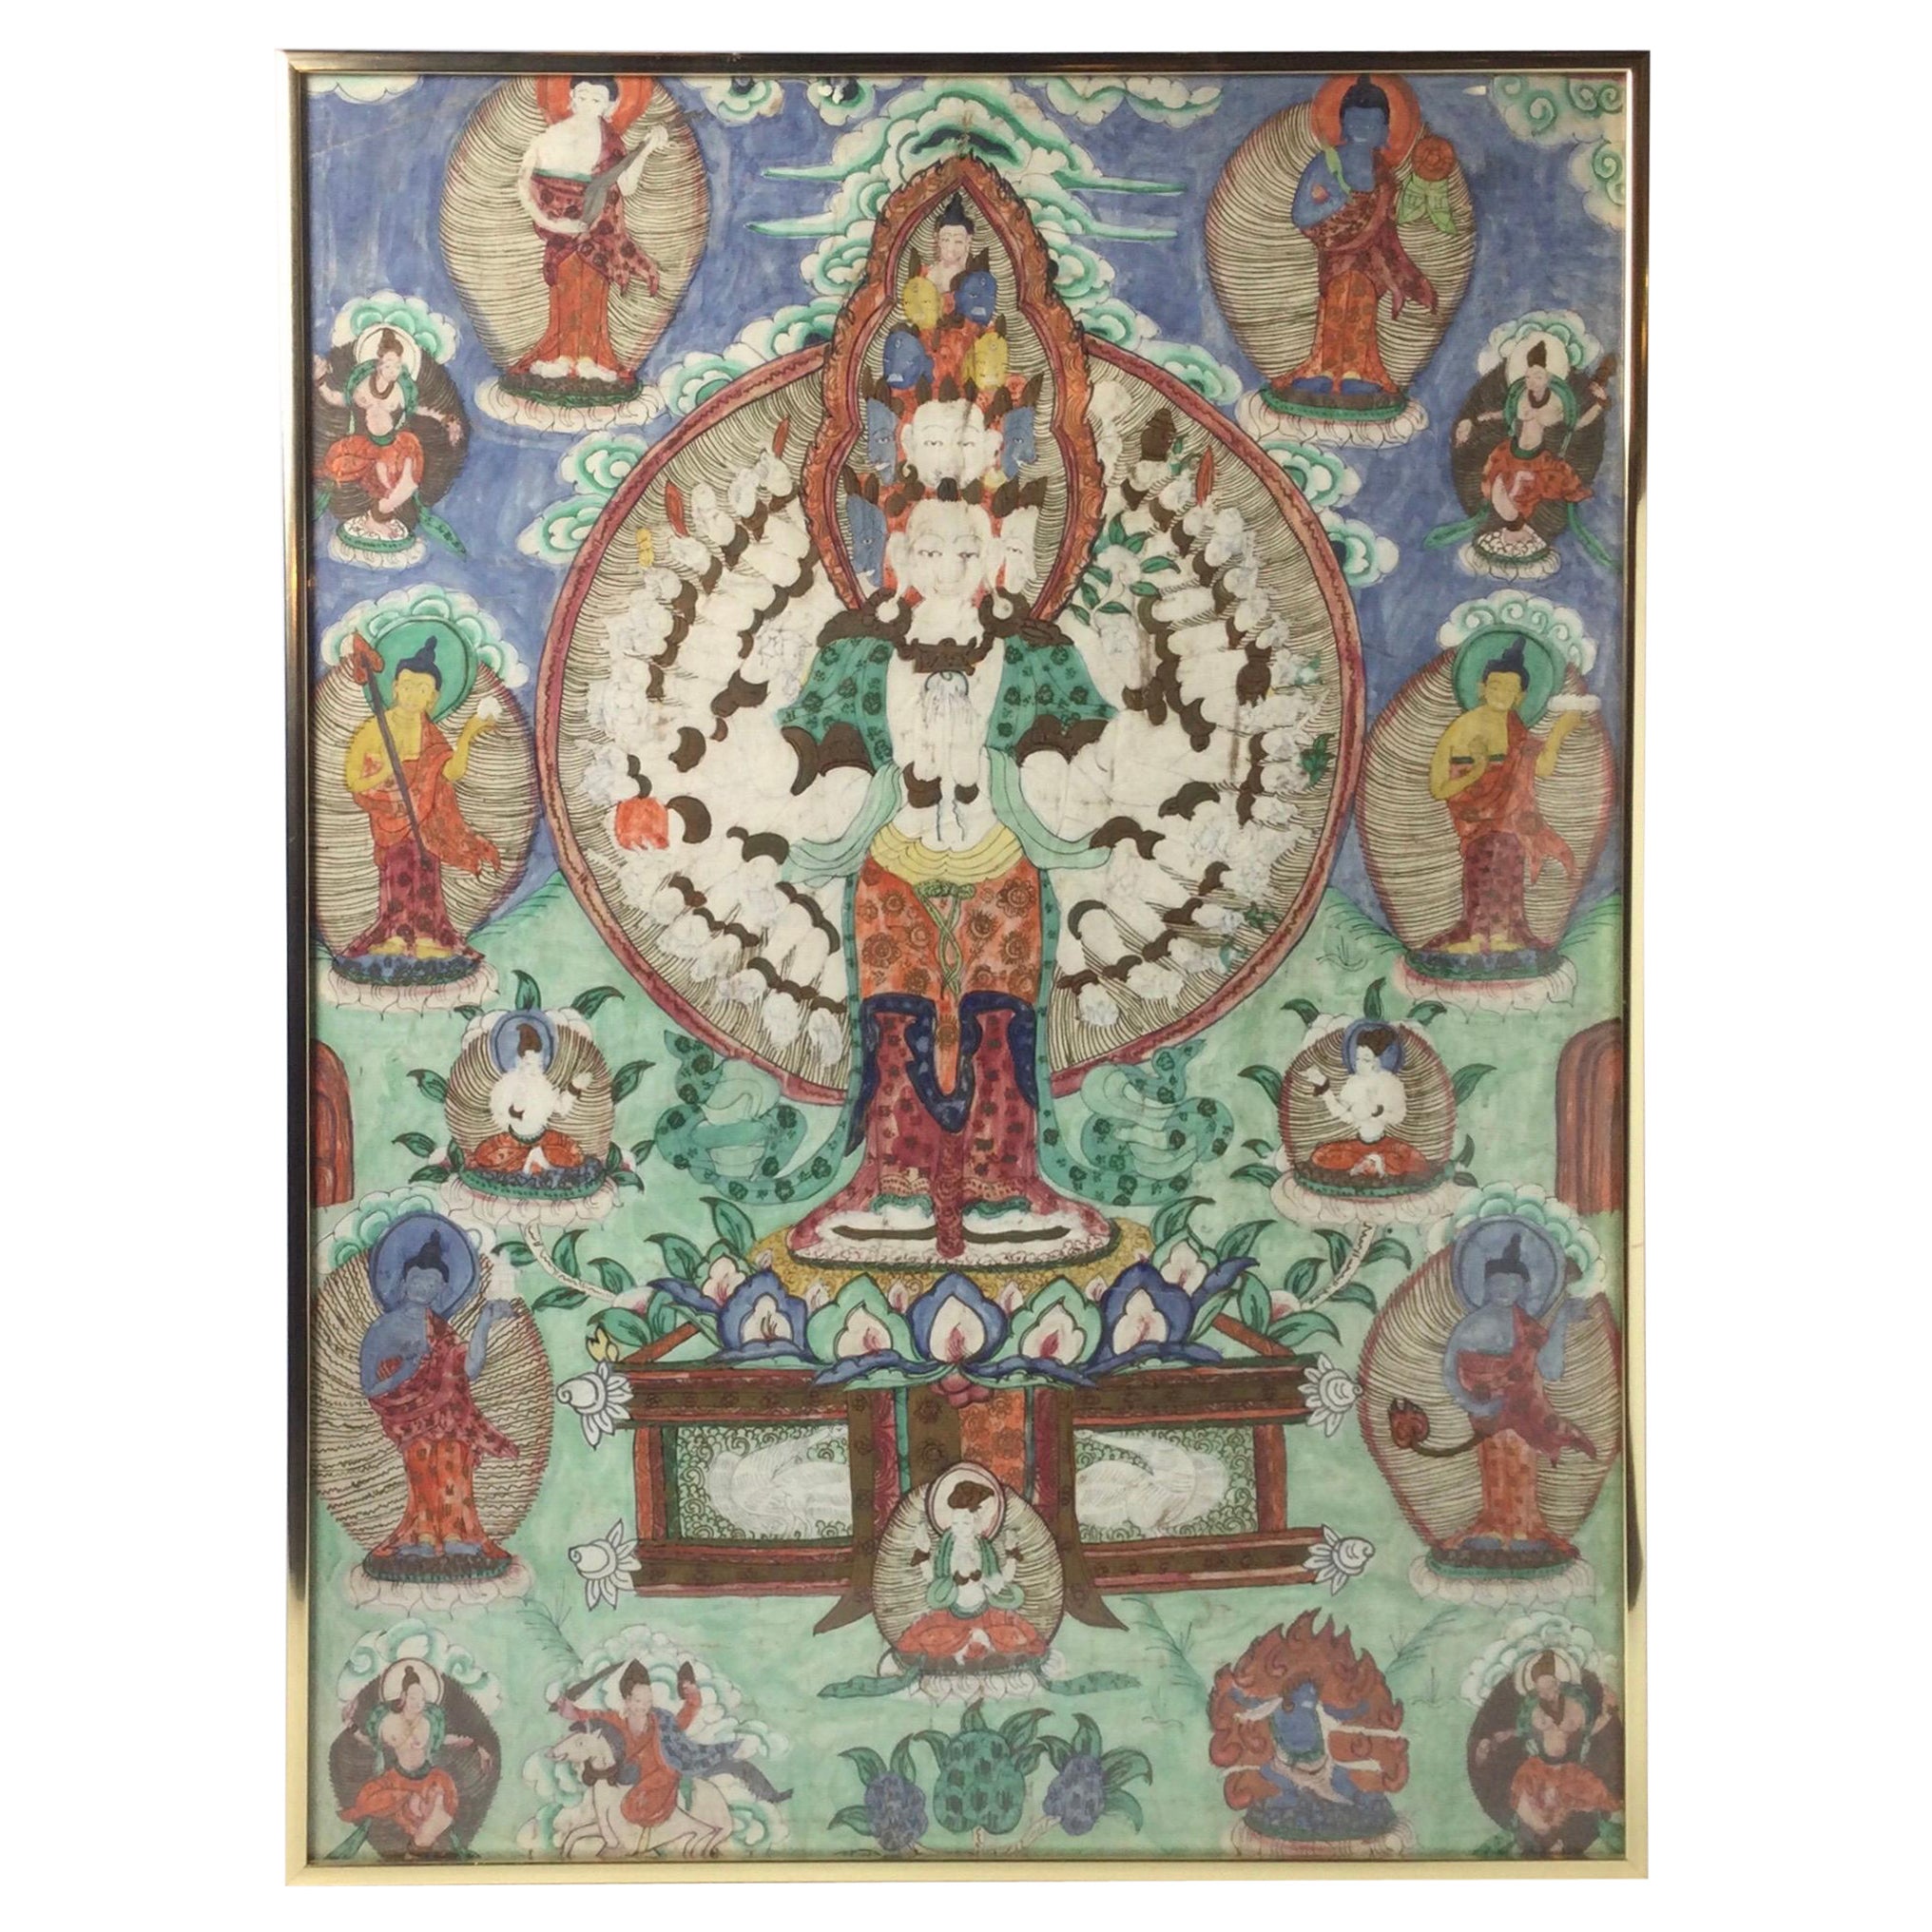 Ancienne tibétaine batike représentant une divinité